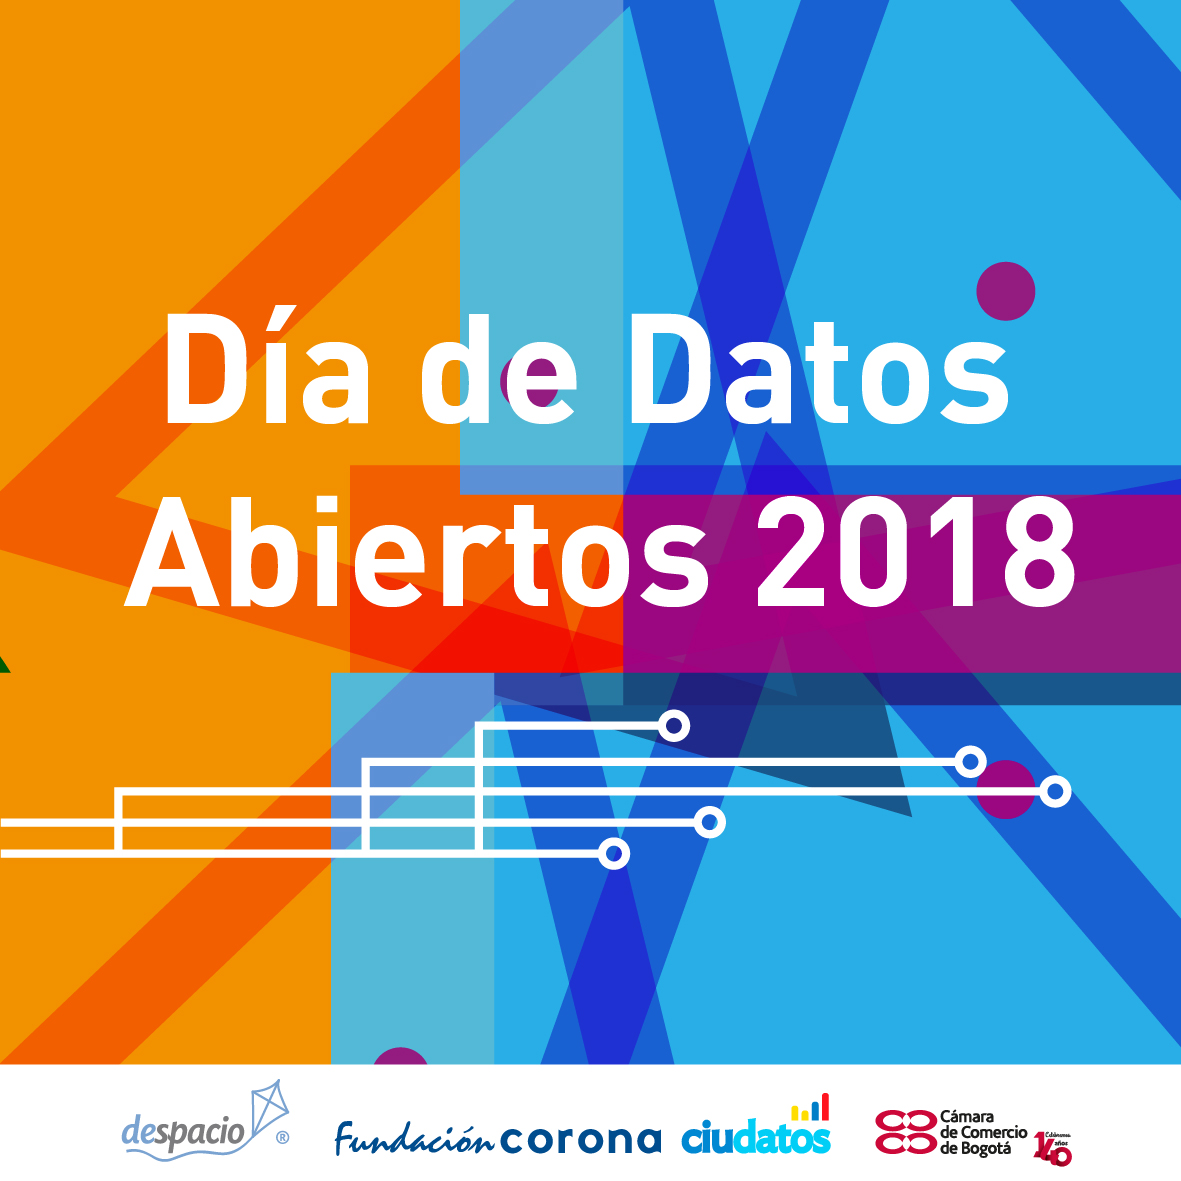 Día de datos abiertos Despacio, Cámara de Comercio de Bogotá y Fundación Corona